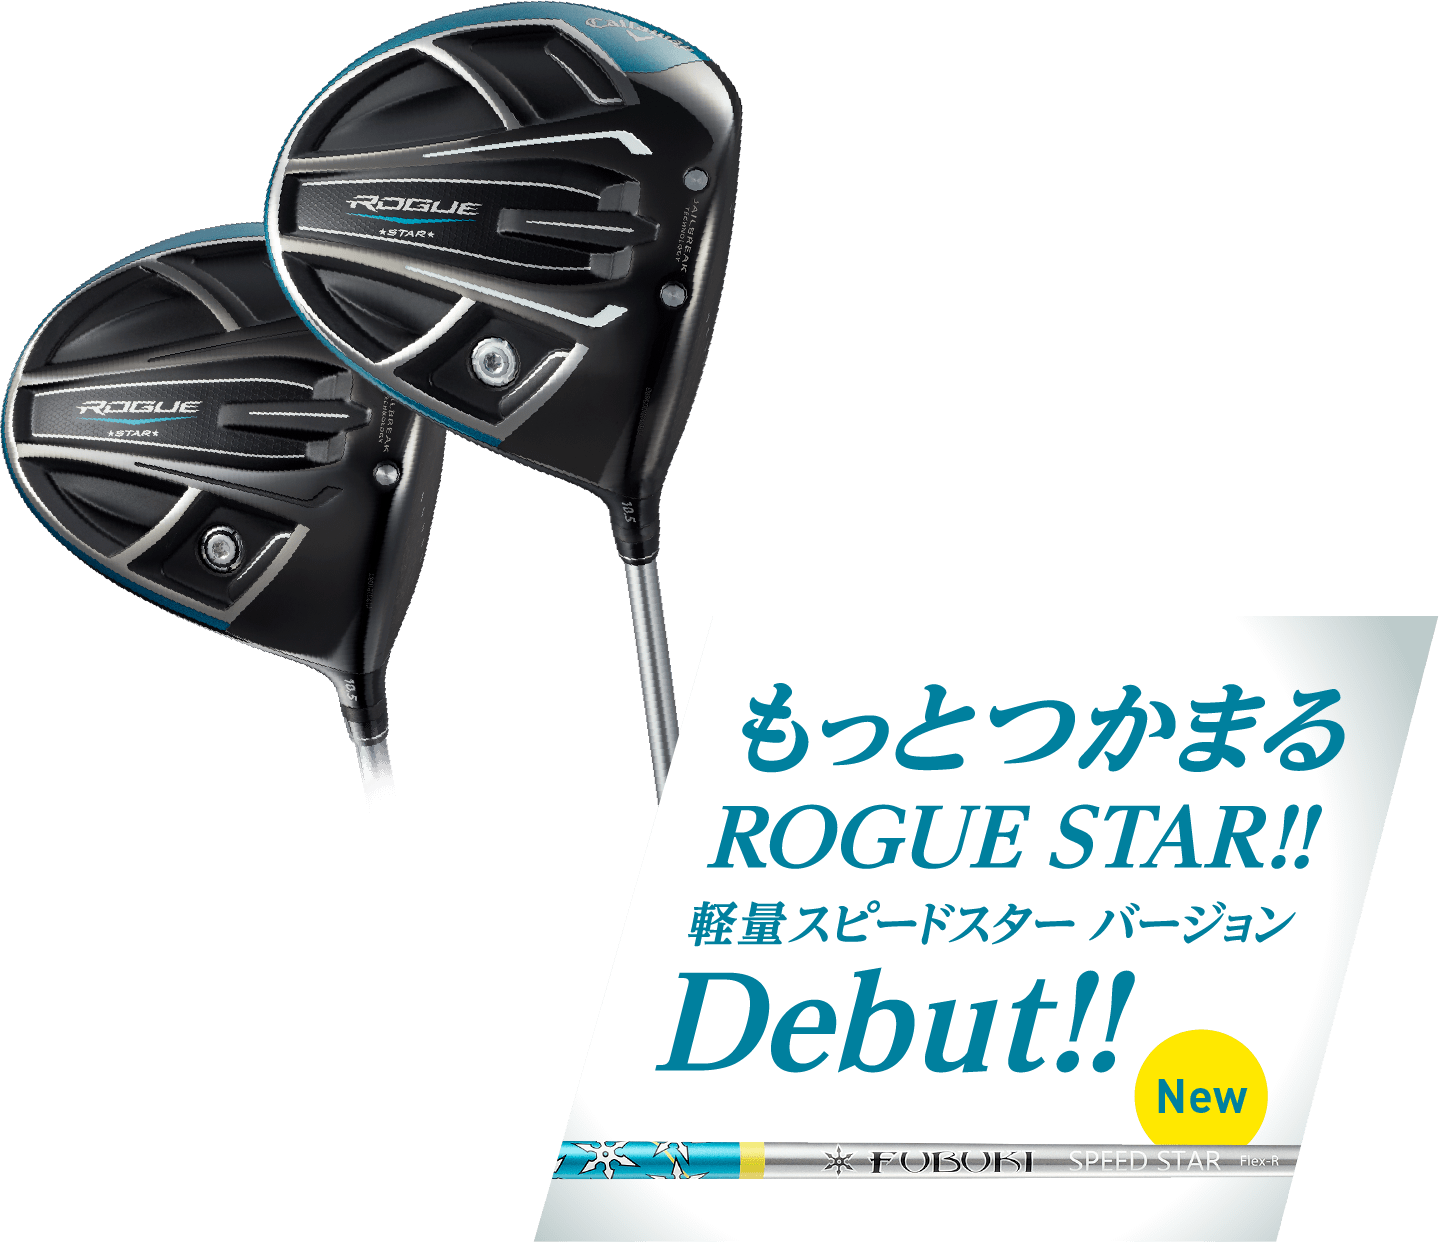 【お得在庫あ】ROGUE(ローグ) STAR ドライバー 2018 (日本仕様) キャロウェイ ドライバー